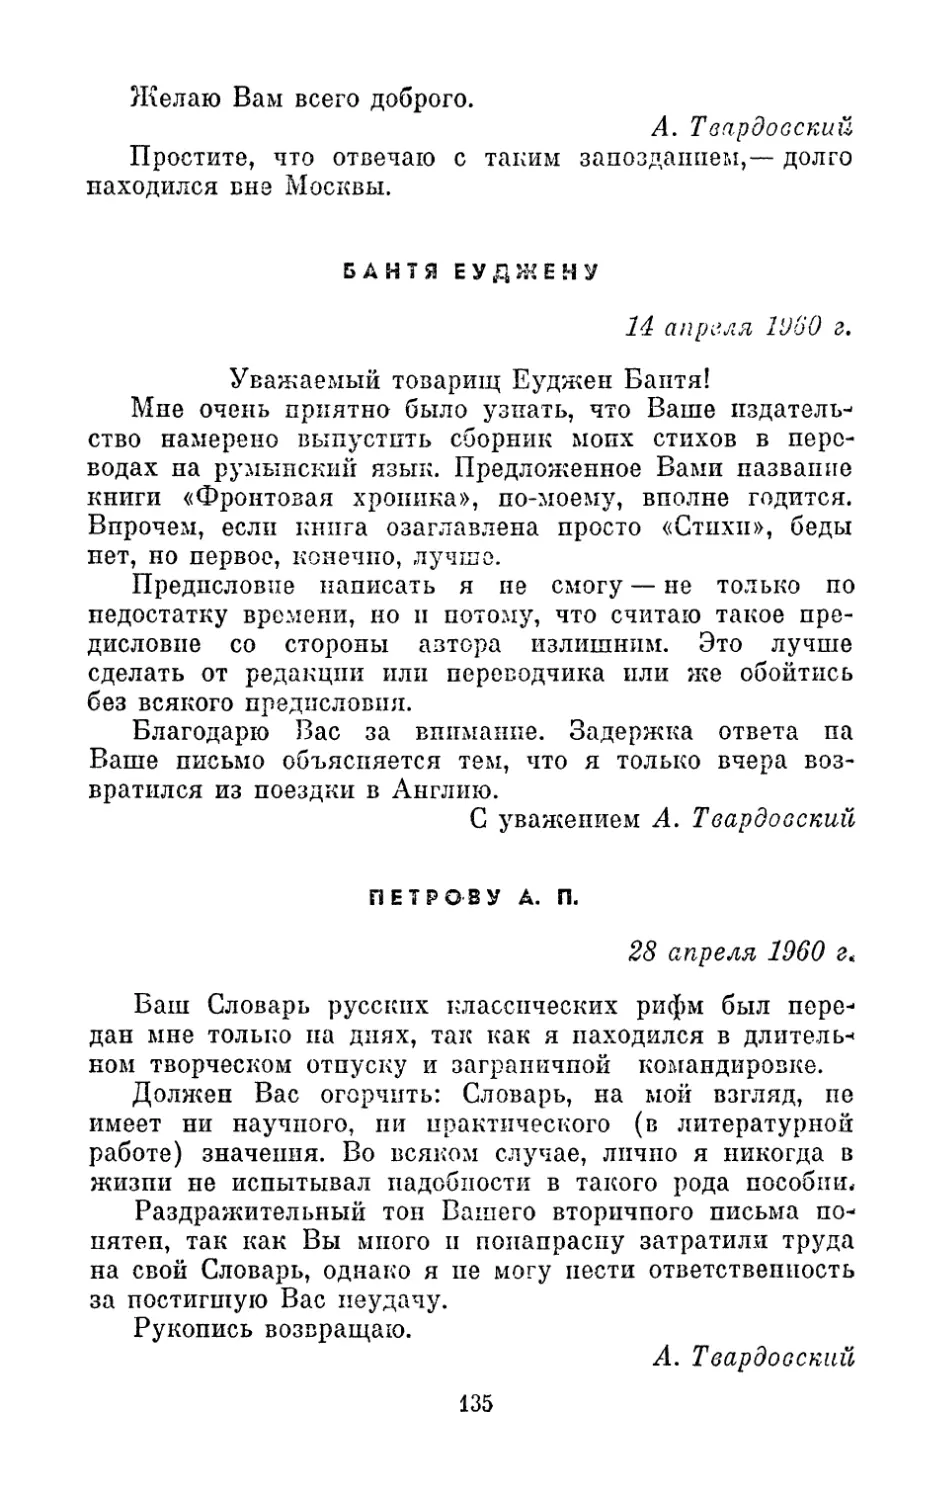 Бантя Еуджену, 14 апреля 1960 г.
Петрову А. П., 28 апреля 1960 г.